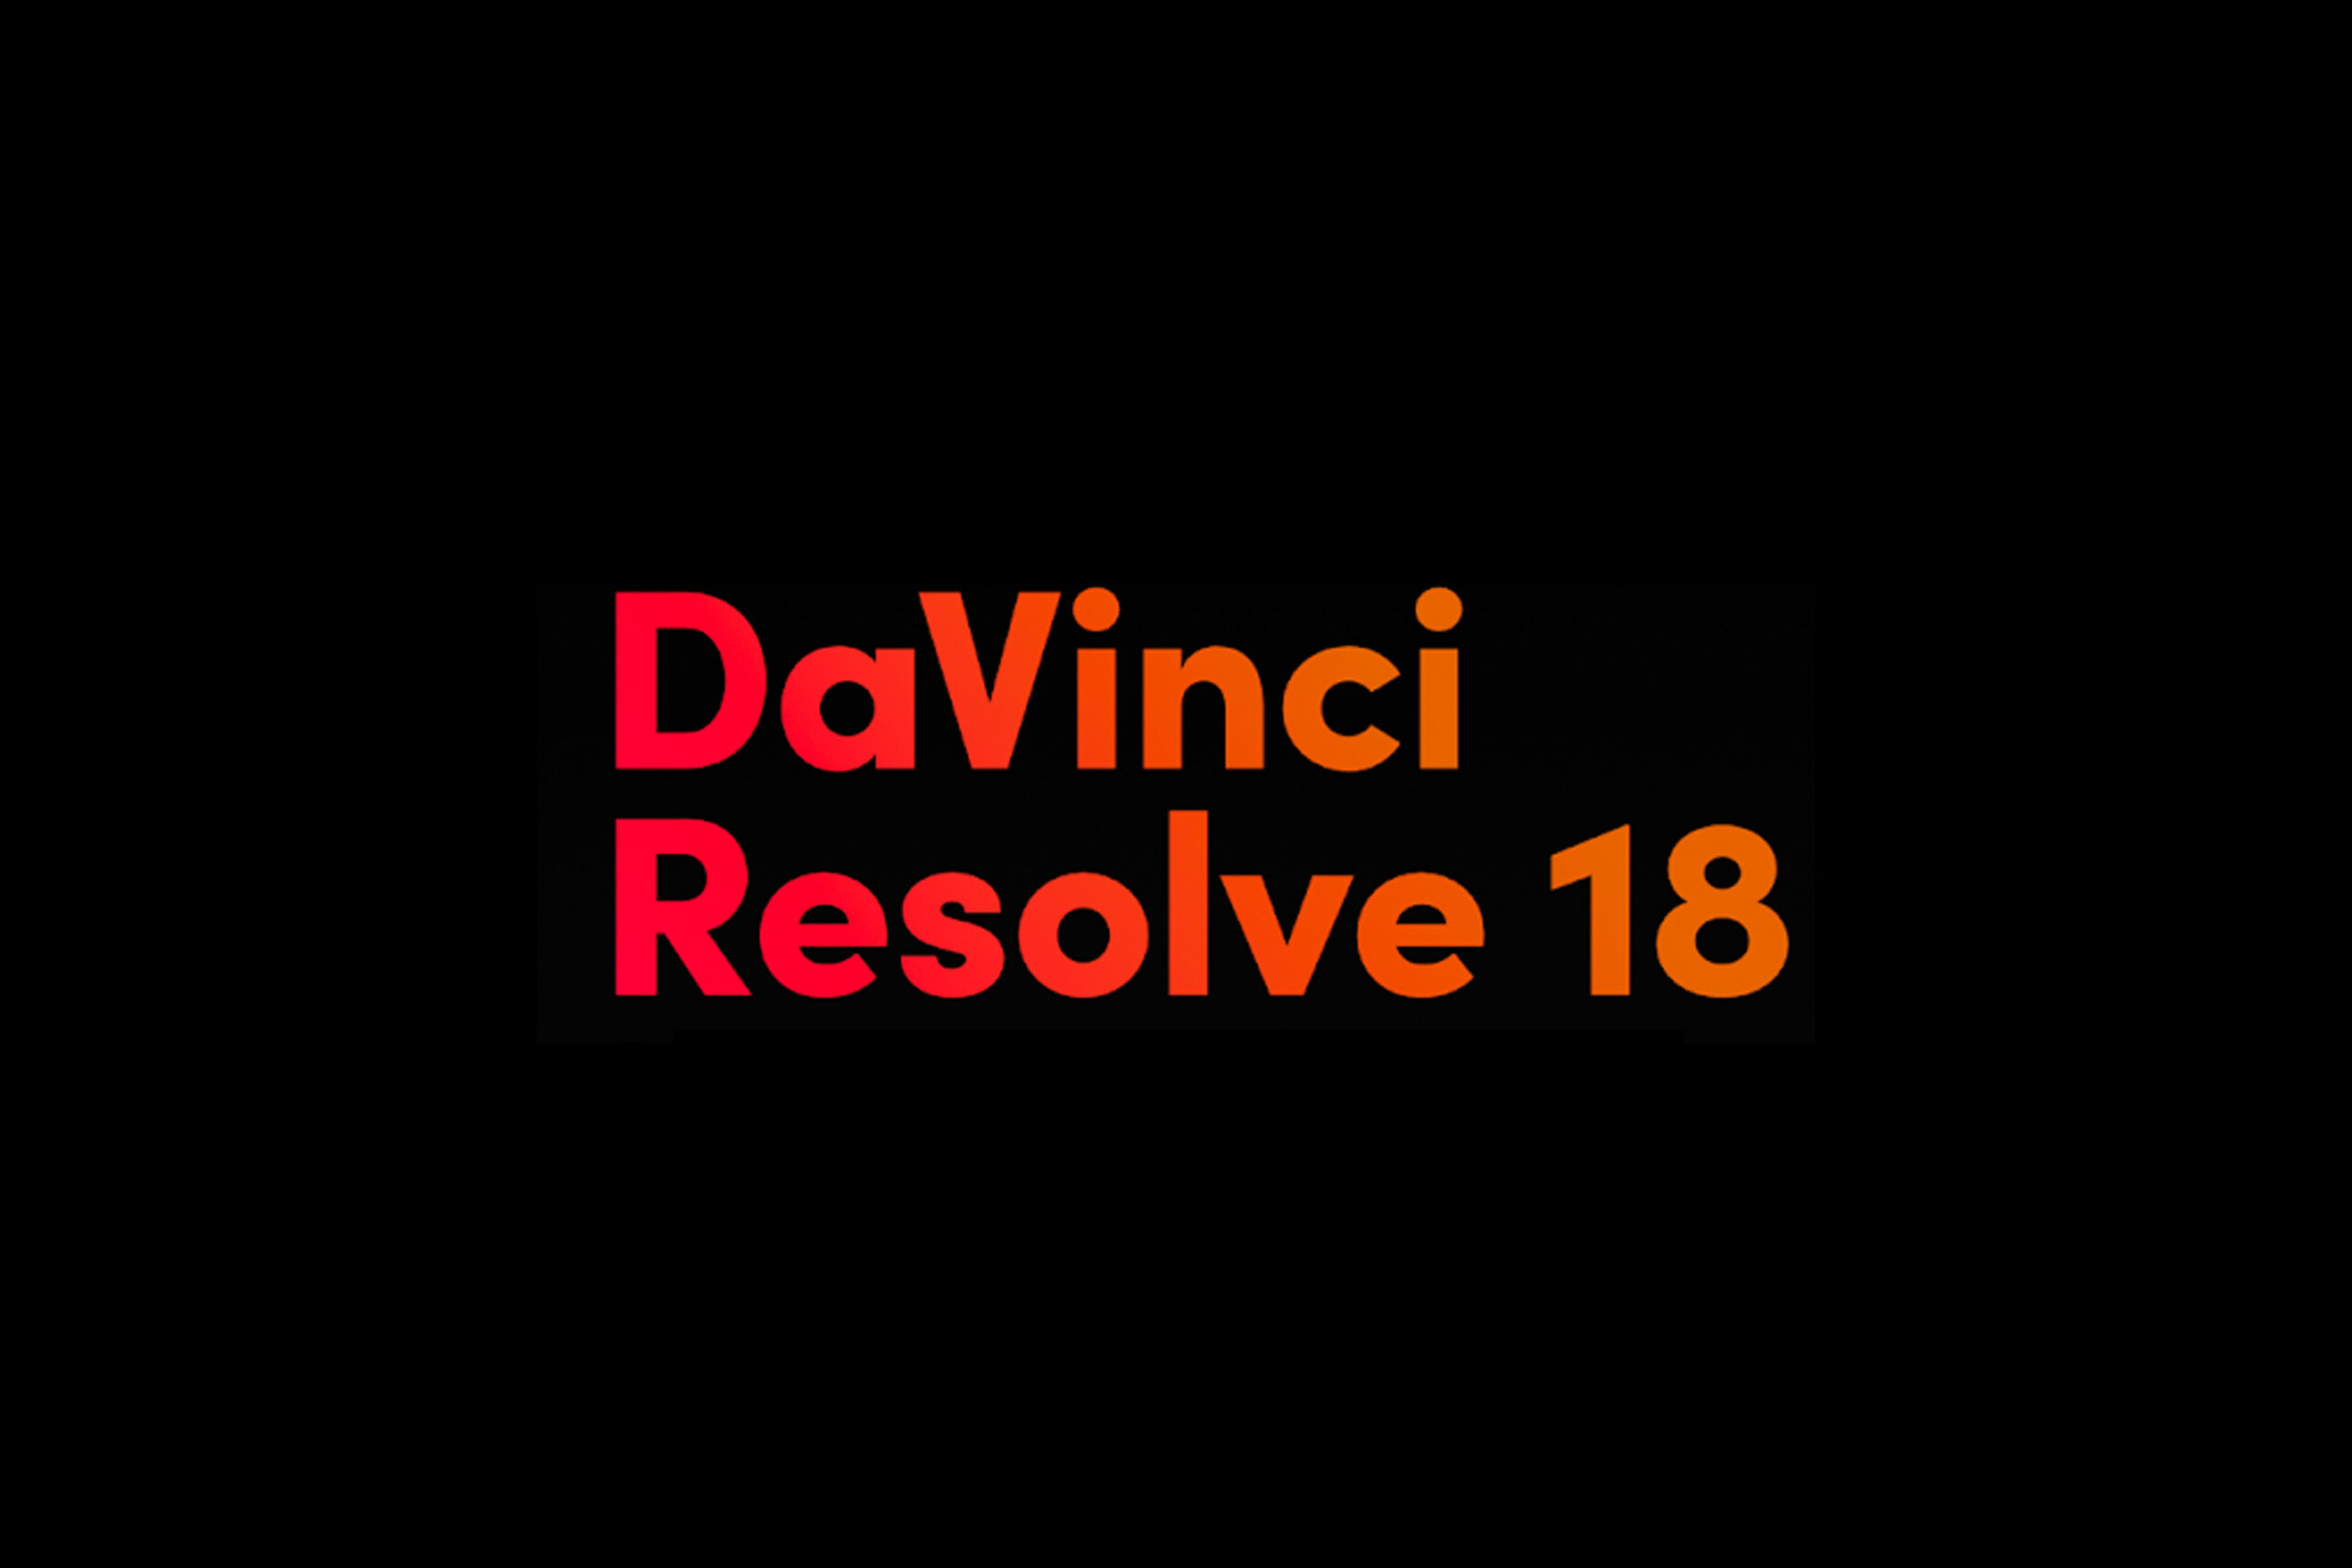 davinci resolve studio 18